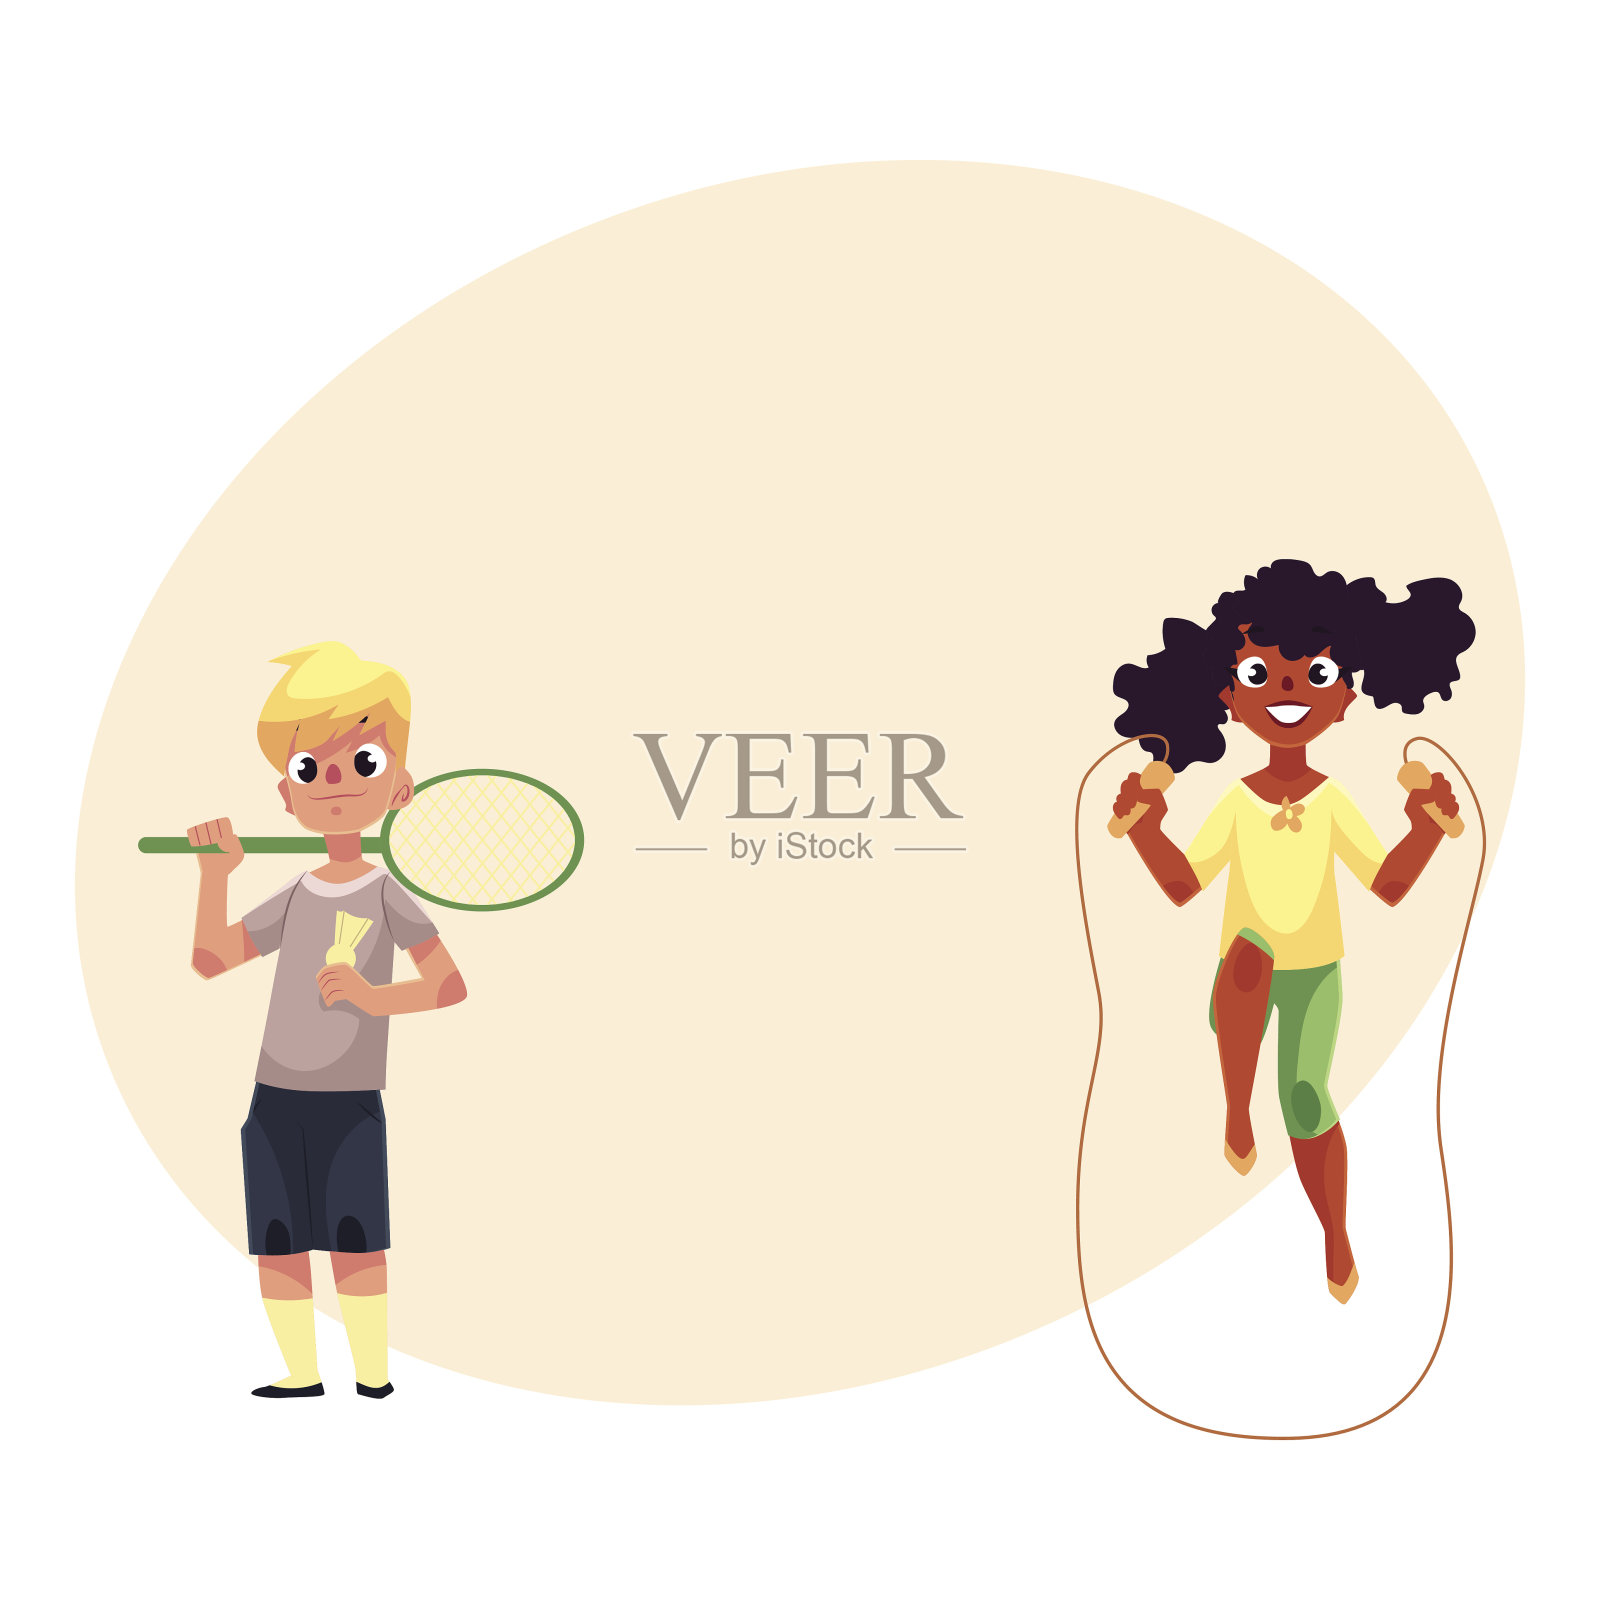 男孩和女孩带着跳绳，羽毛球拍在操场上插画图片素材